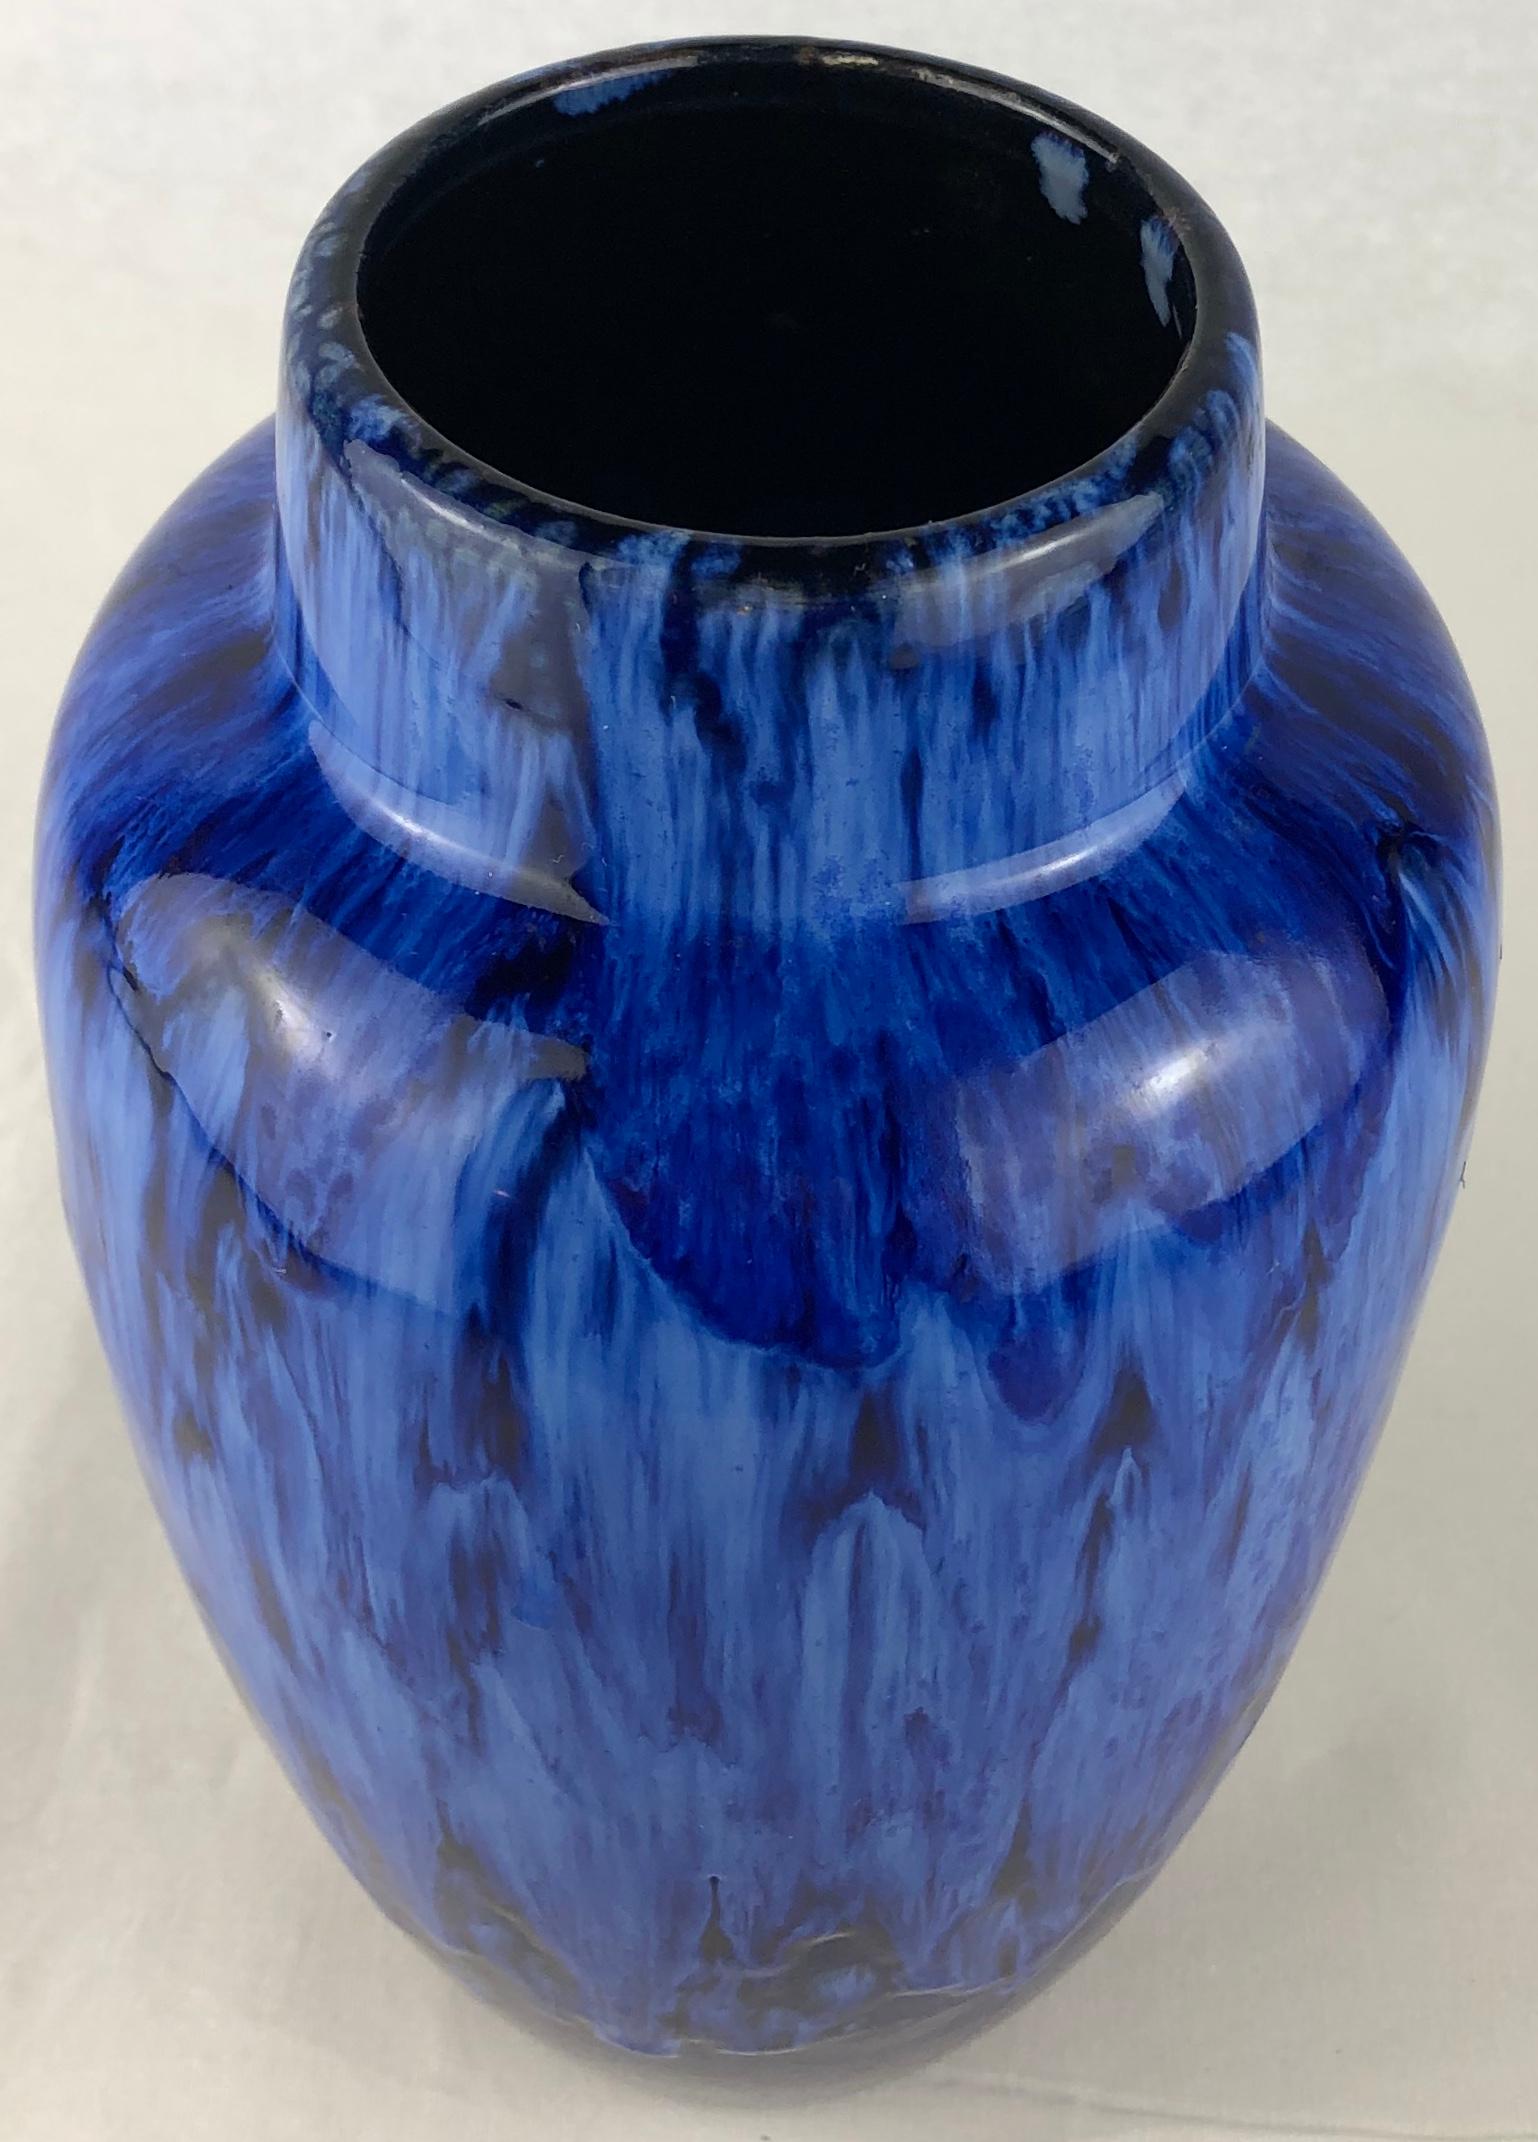 Vase en céramique français du milieu du siècle dernier, d'une couleur bleu cobalt étonnante. 

Ce magnifique objet décoratif rehaussera toute table, étagère ou comptoir. 
Parfait état vintage, sans fissures ni éclats.

Porte la marque du fabricant,